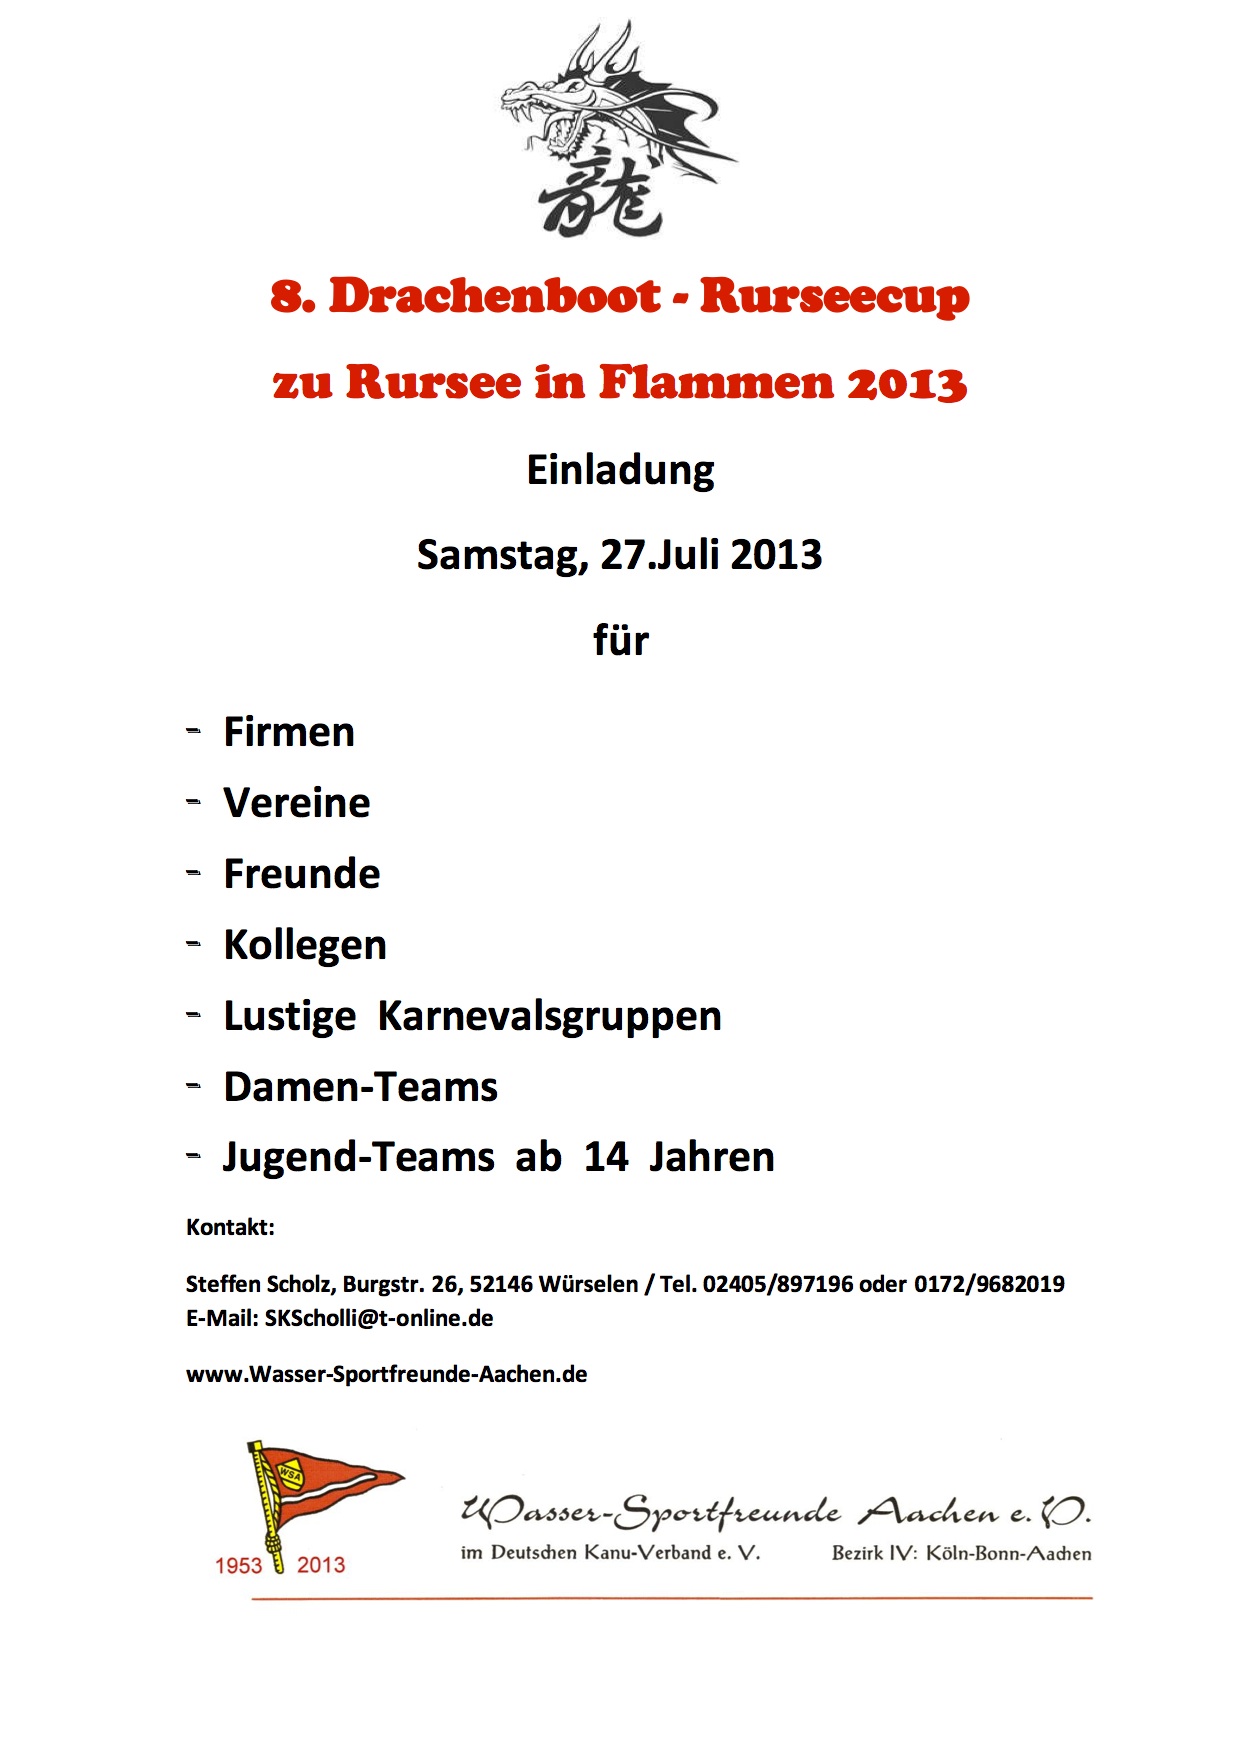 2013_05_20 Einladung Drachenboot-Rurseecup 2013